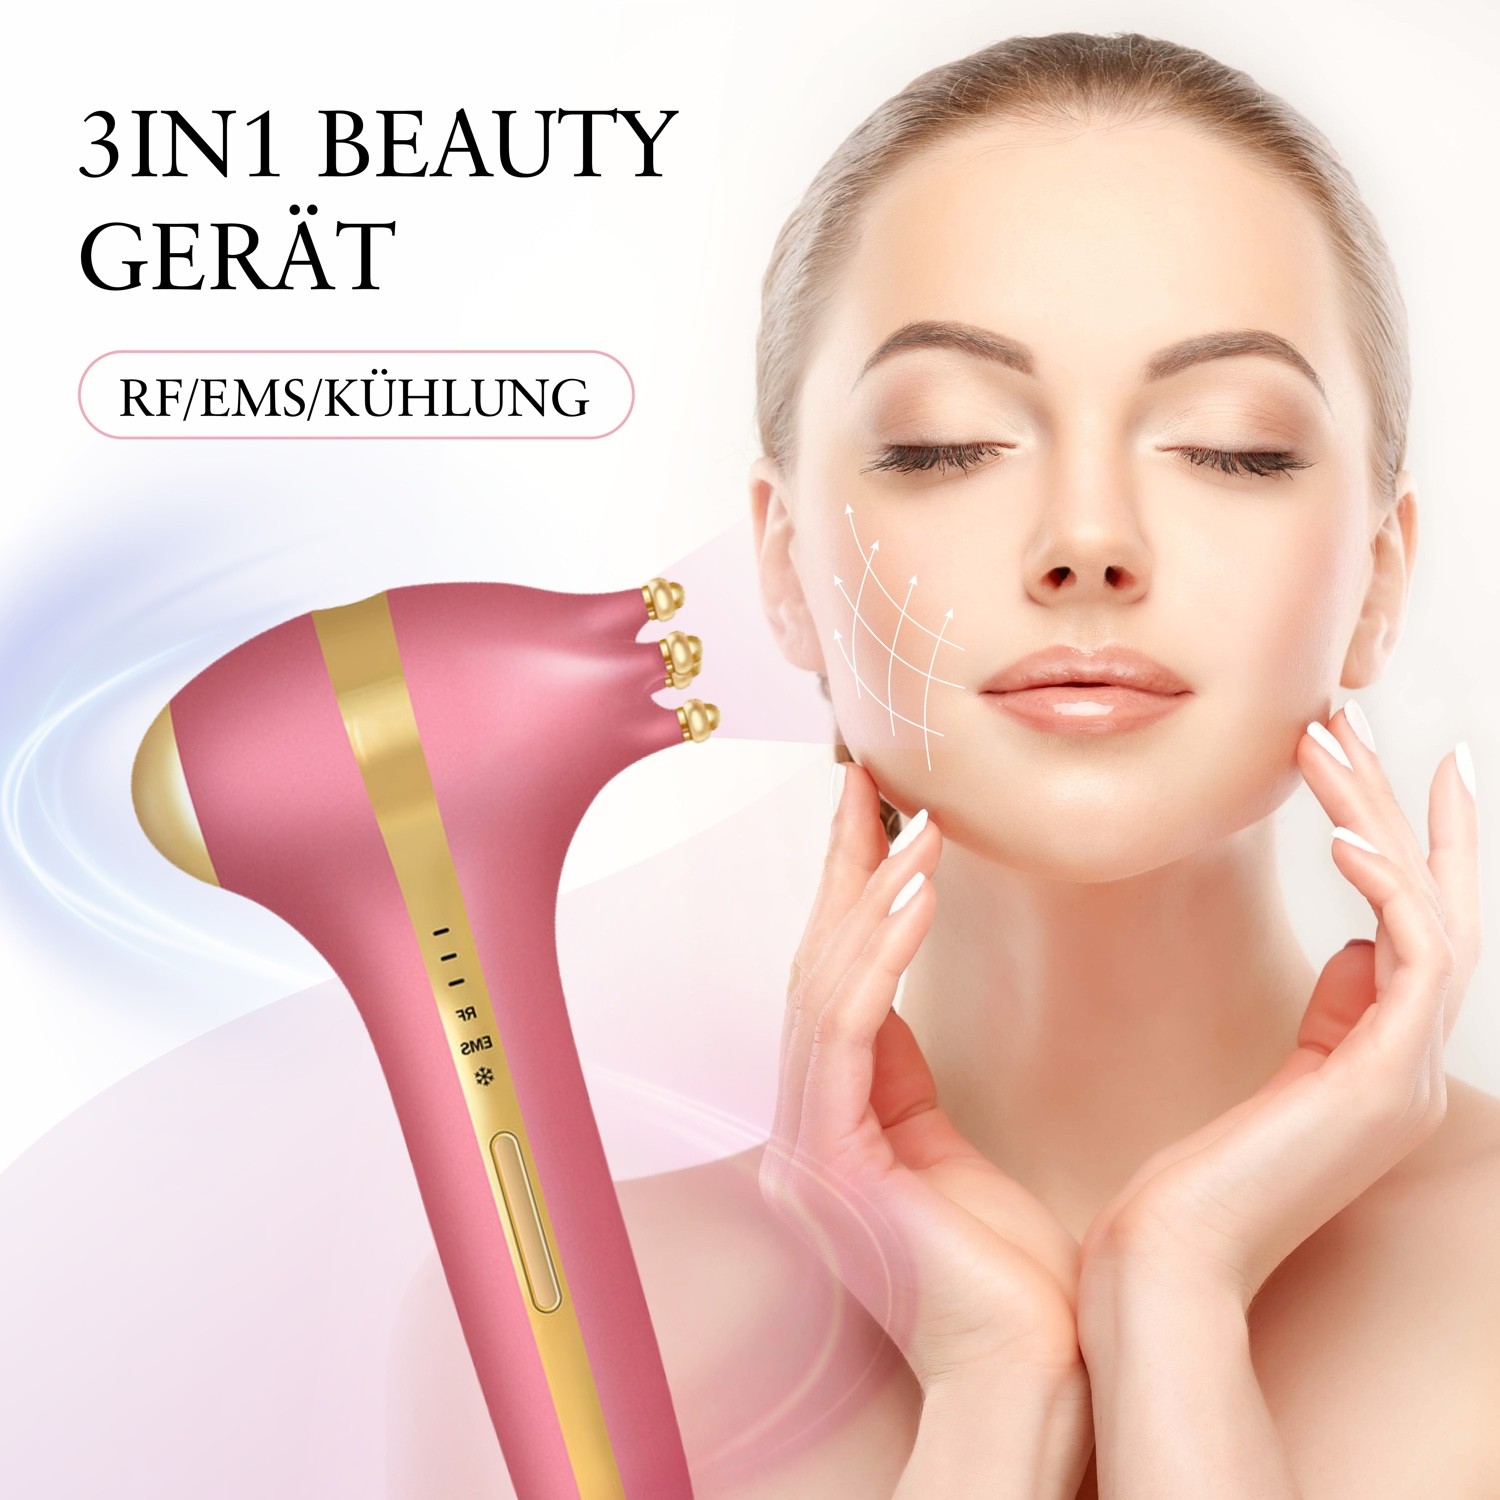 3IN1 Beauty Gerät für die Verjüngung der Haut durch Radiofrequenz und EMS Therapie inklusive Kühlender Funktion 